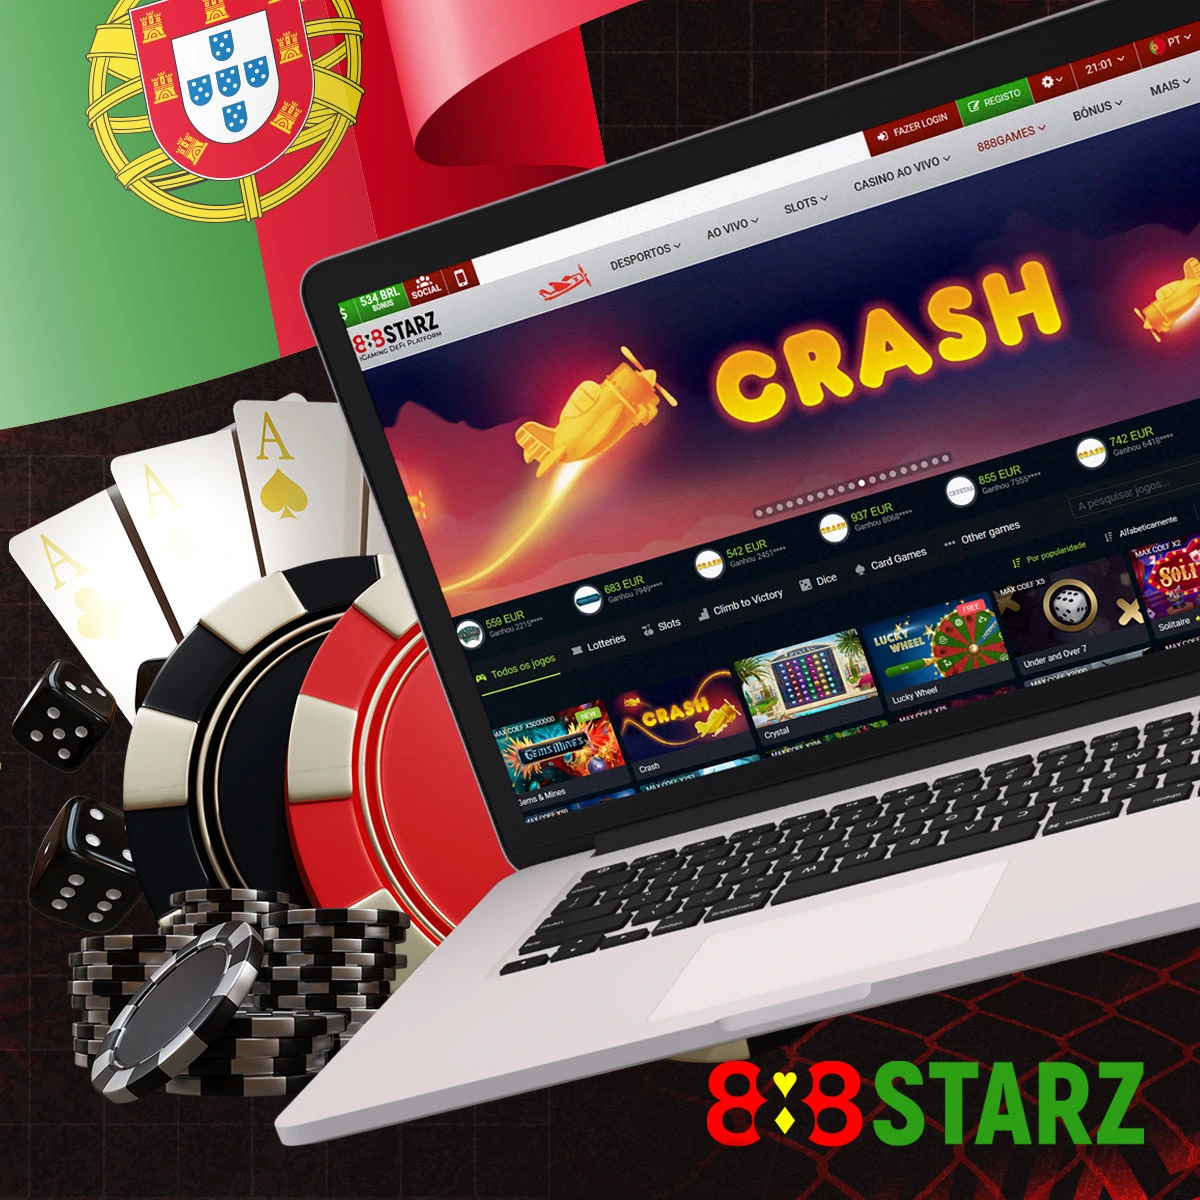 O casino 888starz oferece vários jogos exclusivos